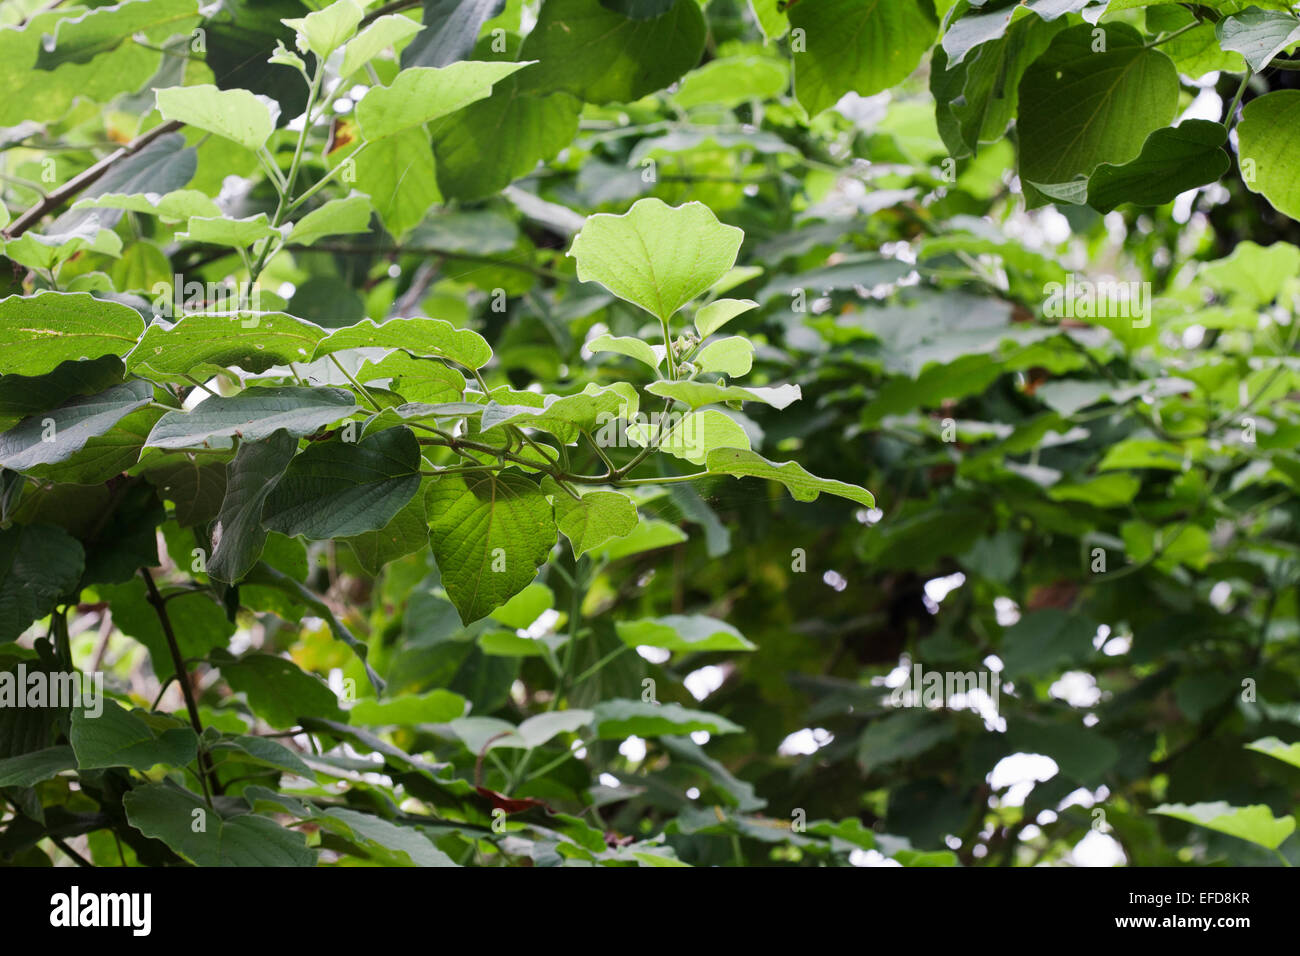 Clerodendrum rotundifolium; plantas medicinales utilizadas en Uganda para curar las tenias, toses y reumatismo Foto de stock